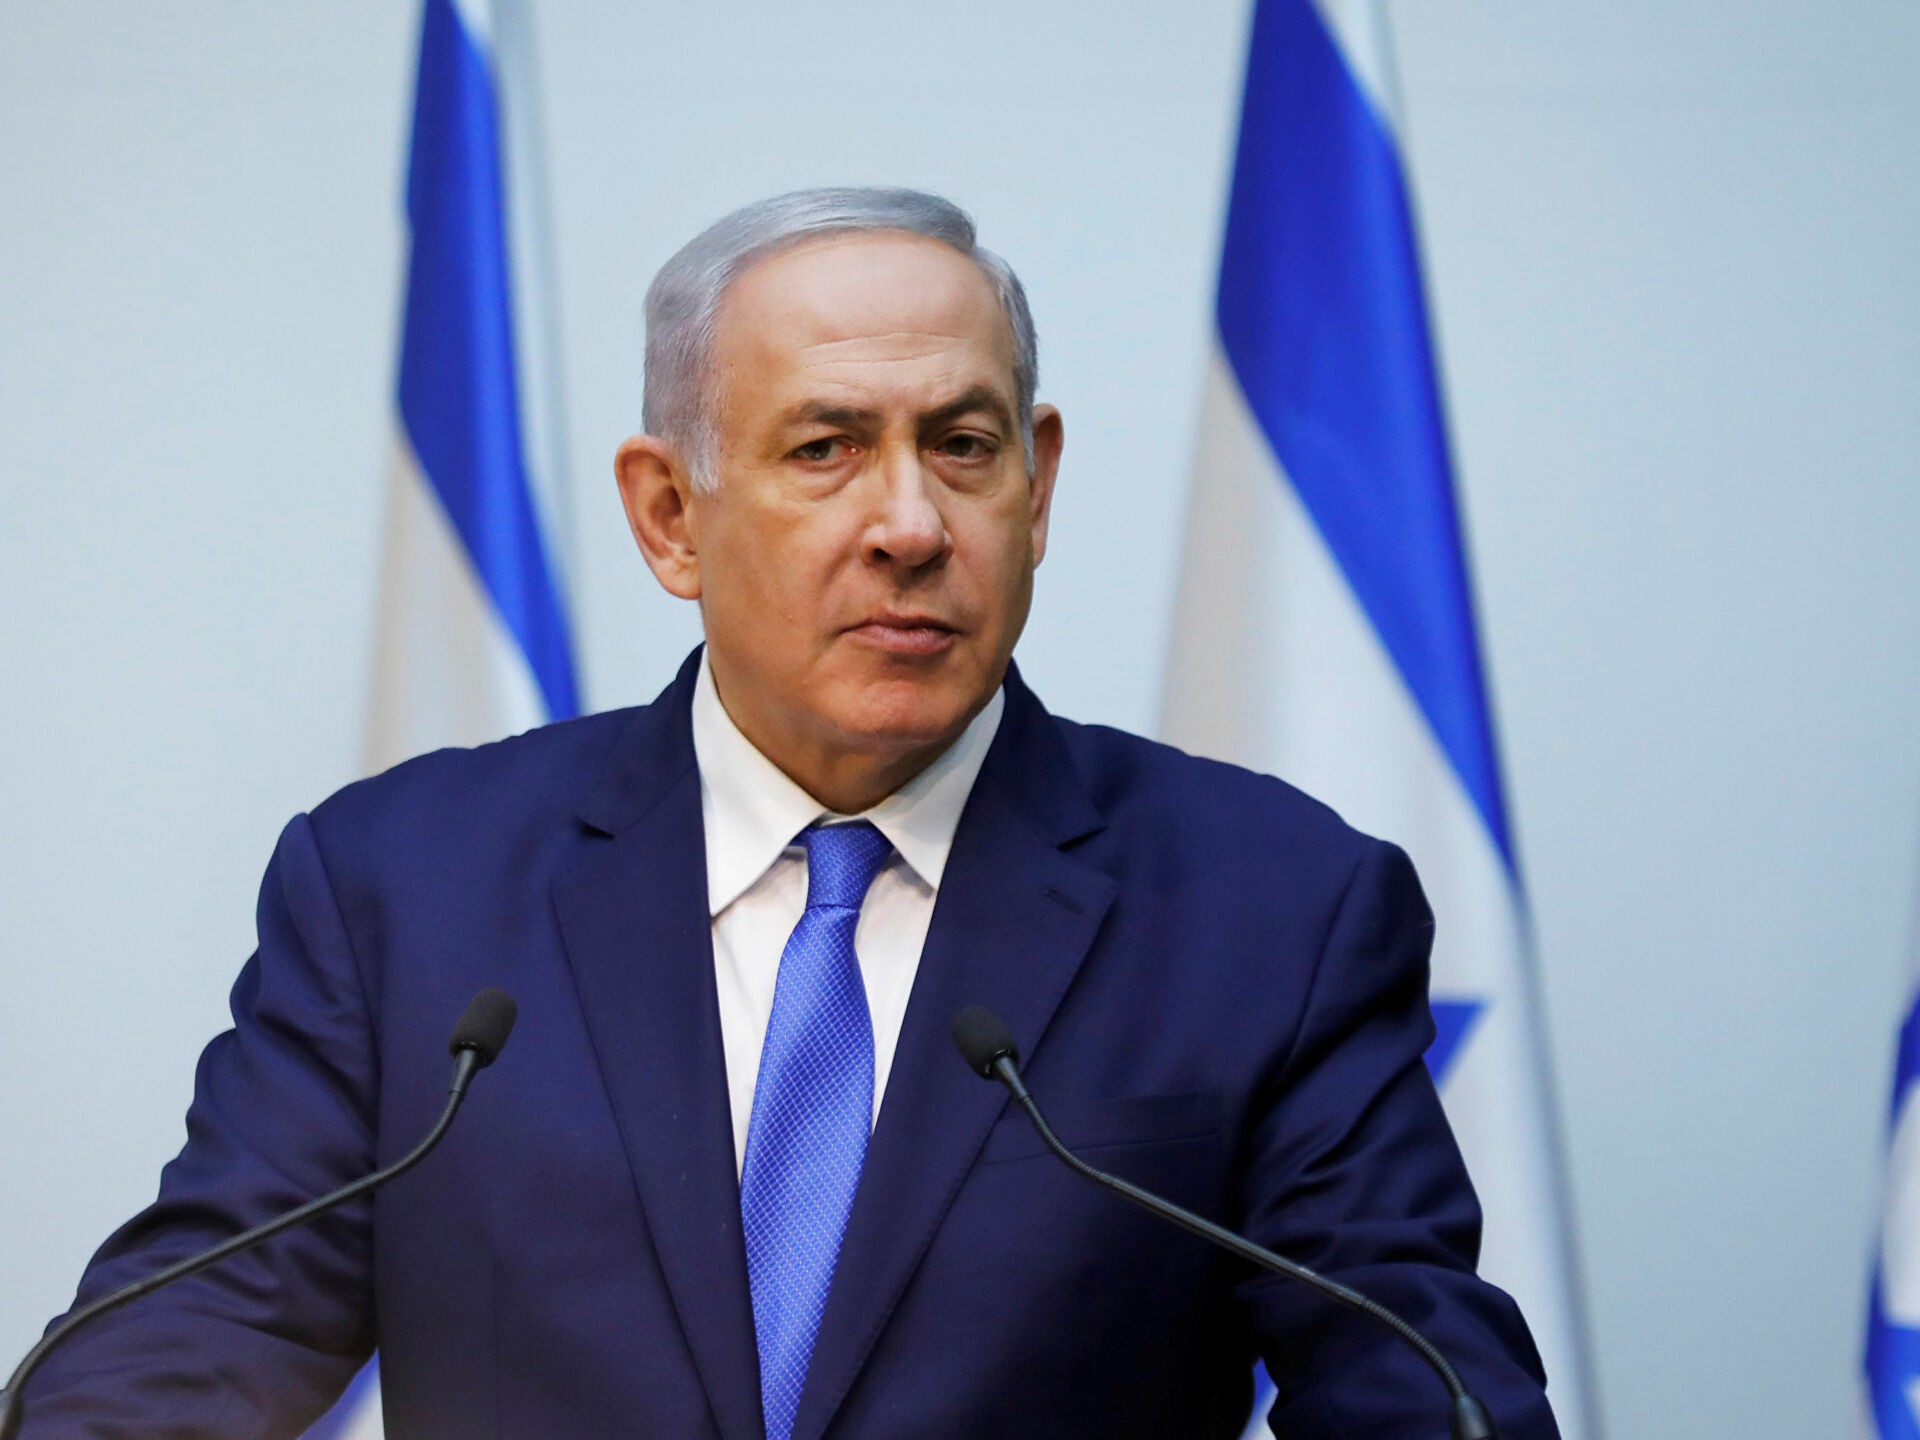 24 Gennaio 2022 – Israele, Netanyahu respinge patteggiamento e resta leader del Likud. Boris Johnson perde un altro pezzo, il vice ministro Agnew rassegna dimissioni per mancanza controlli su frodi legate al Covid